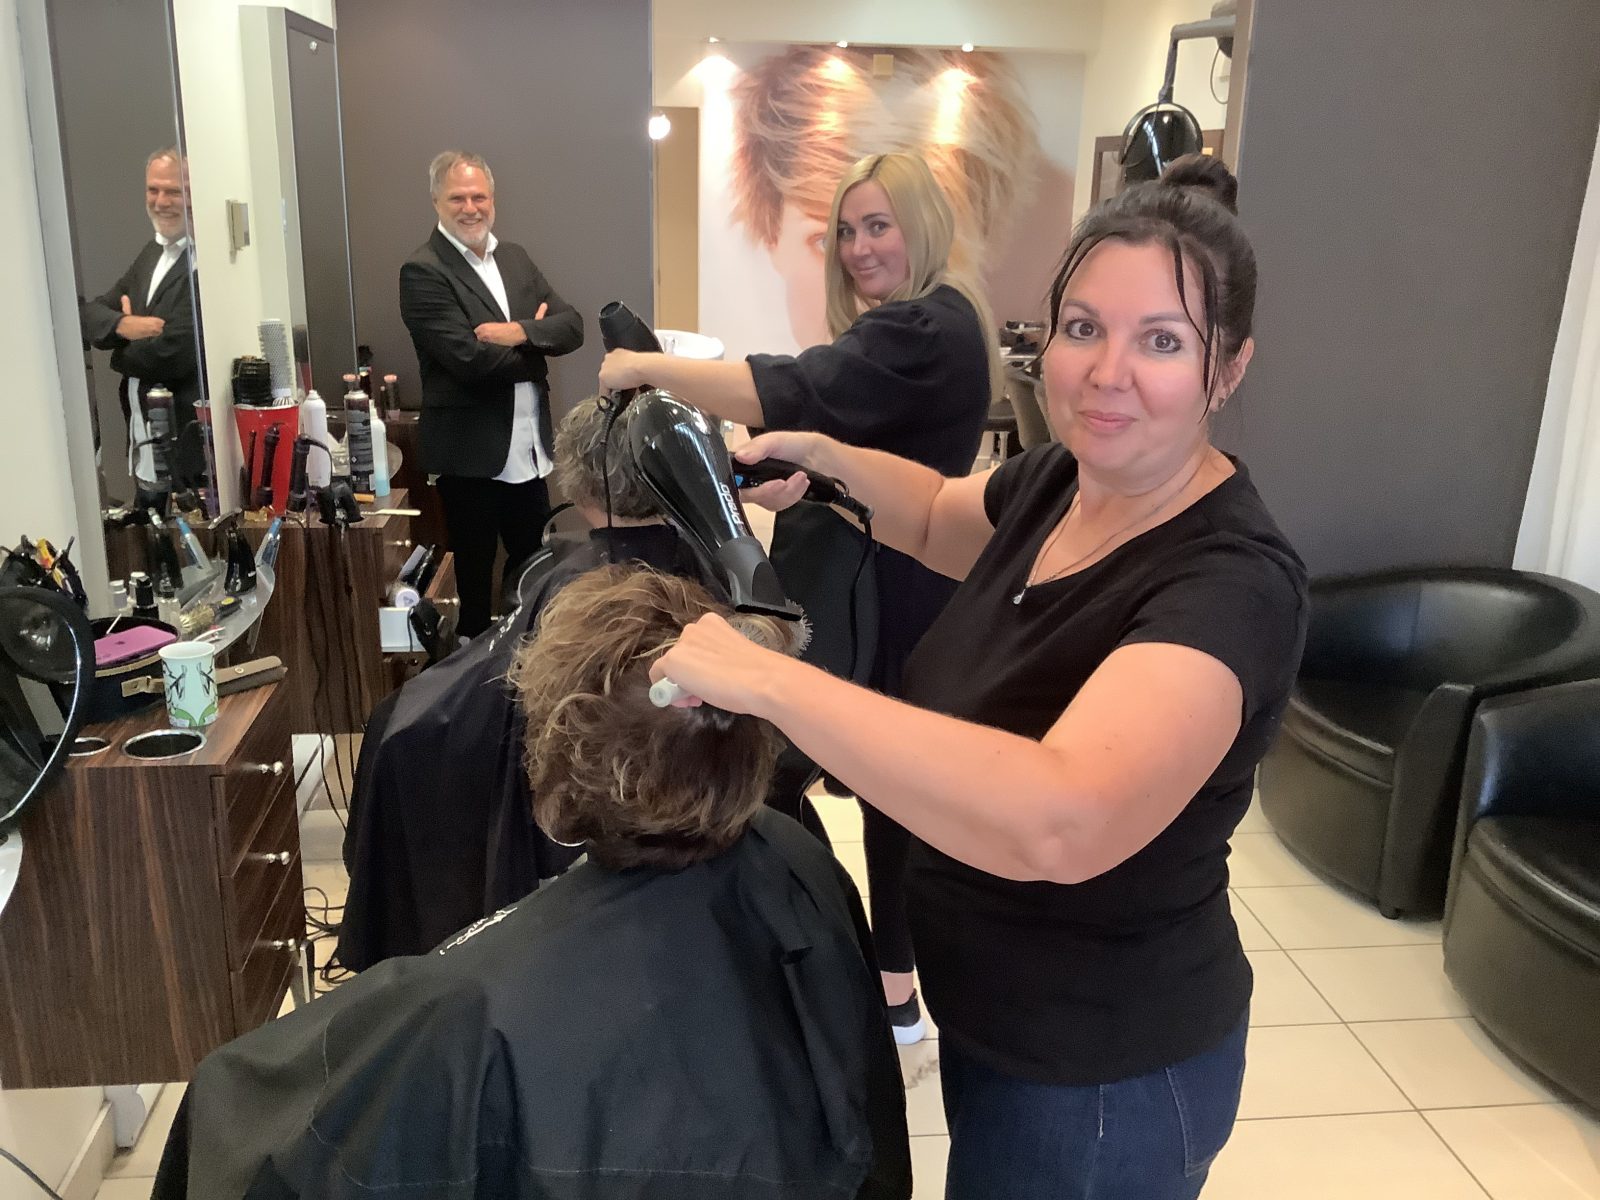 Le Salon Coiffure coiffeur recrute deux réfugiées ukrainiennes